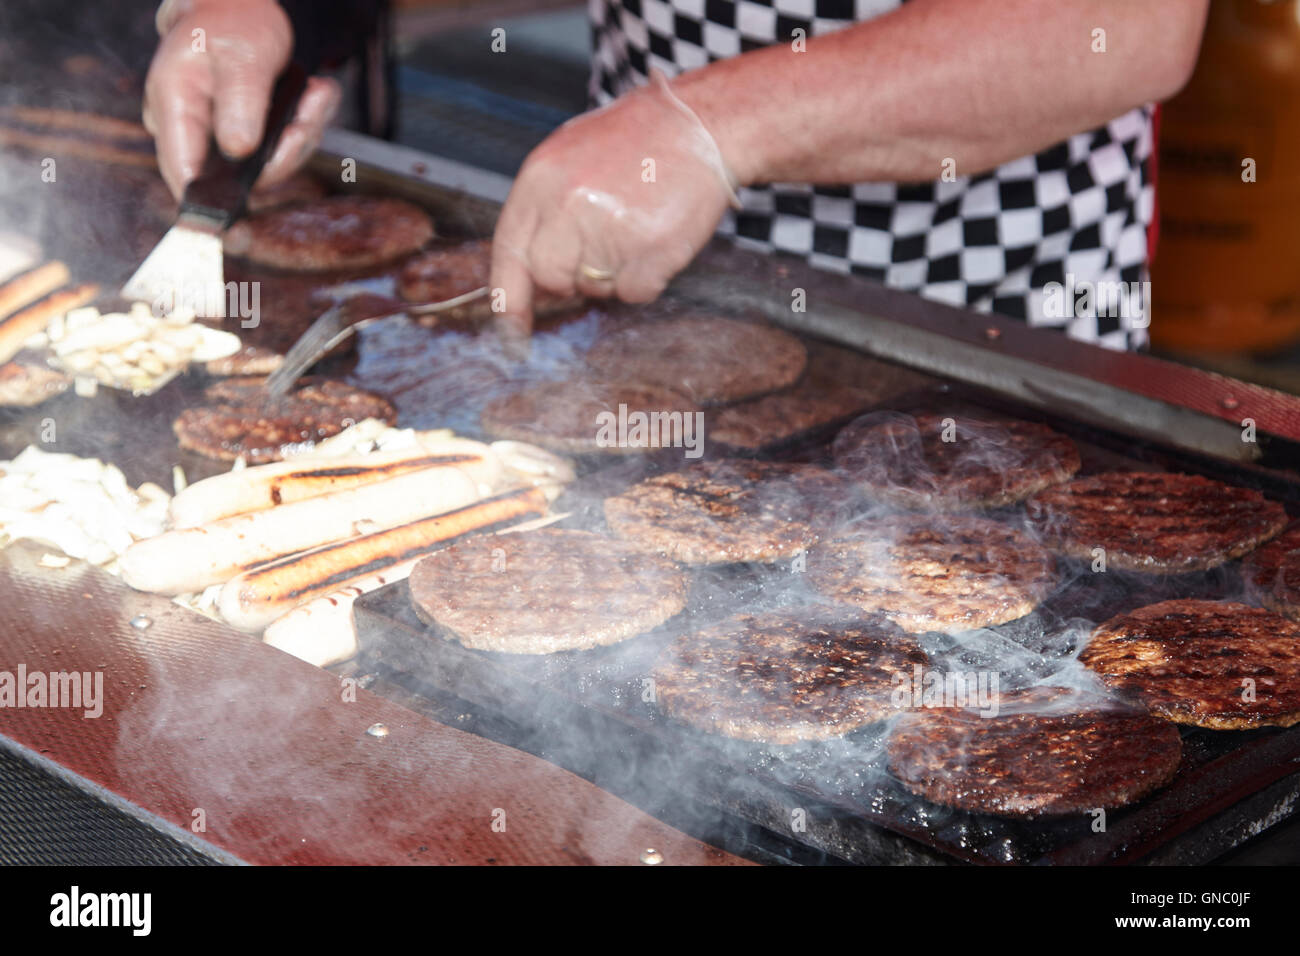 La hamburguesa y el perro caliente caliente puesto de venta de comida rápida en un mercado al aire libre Foto de stock